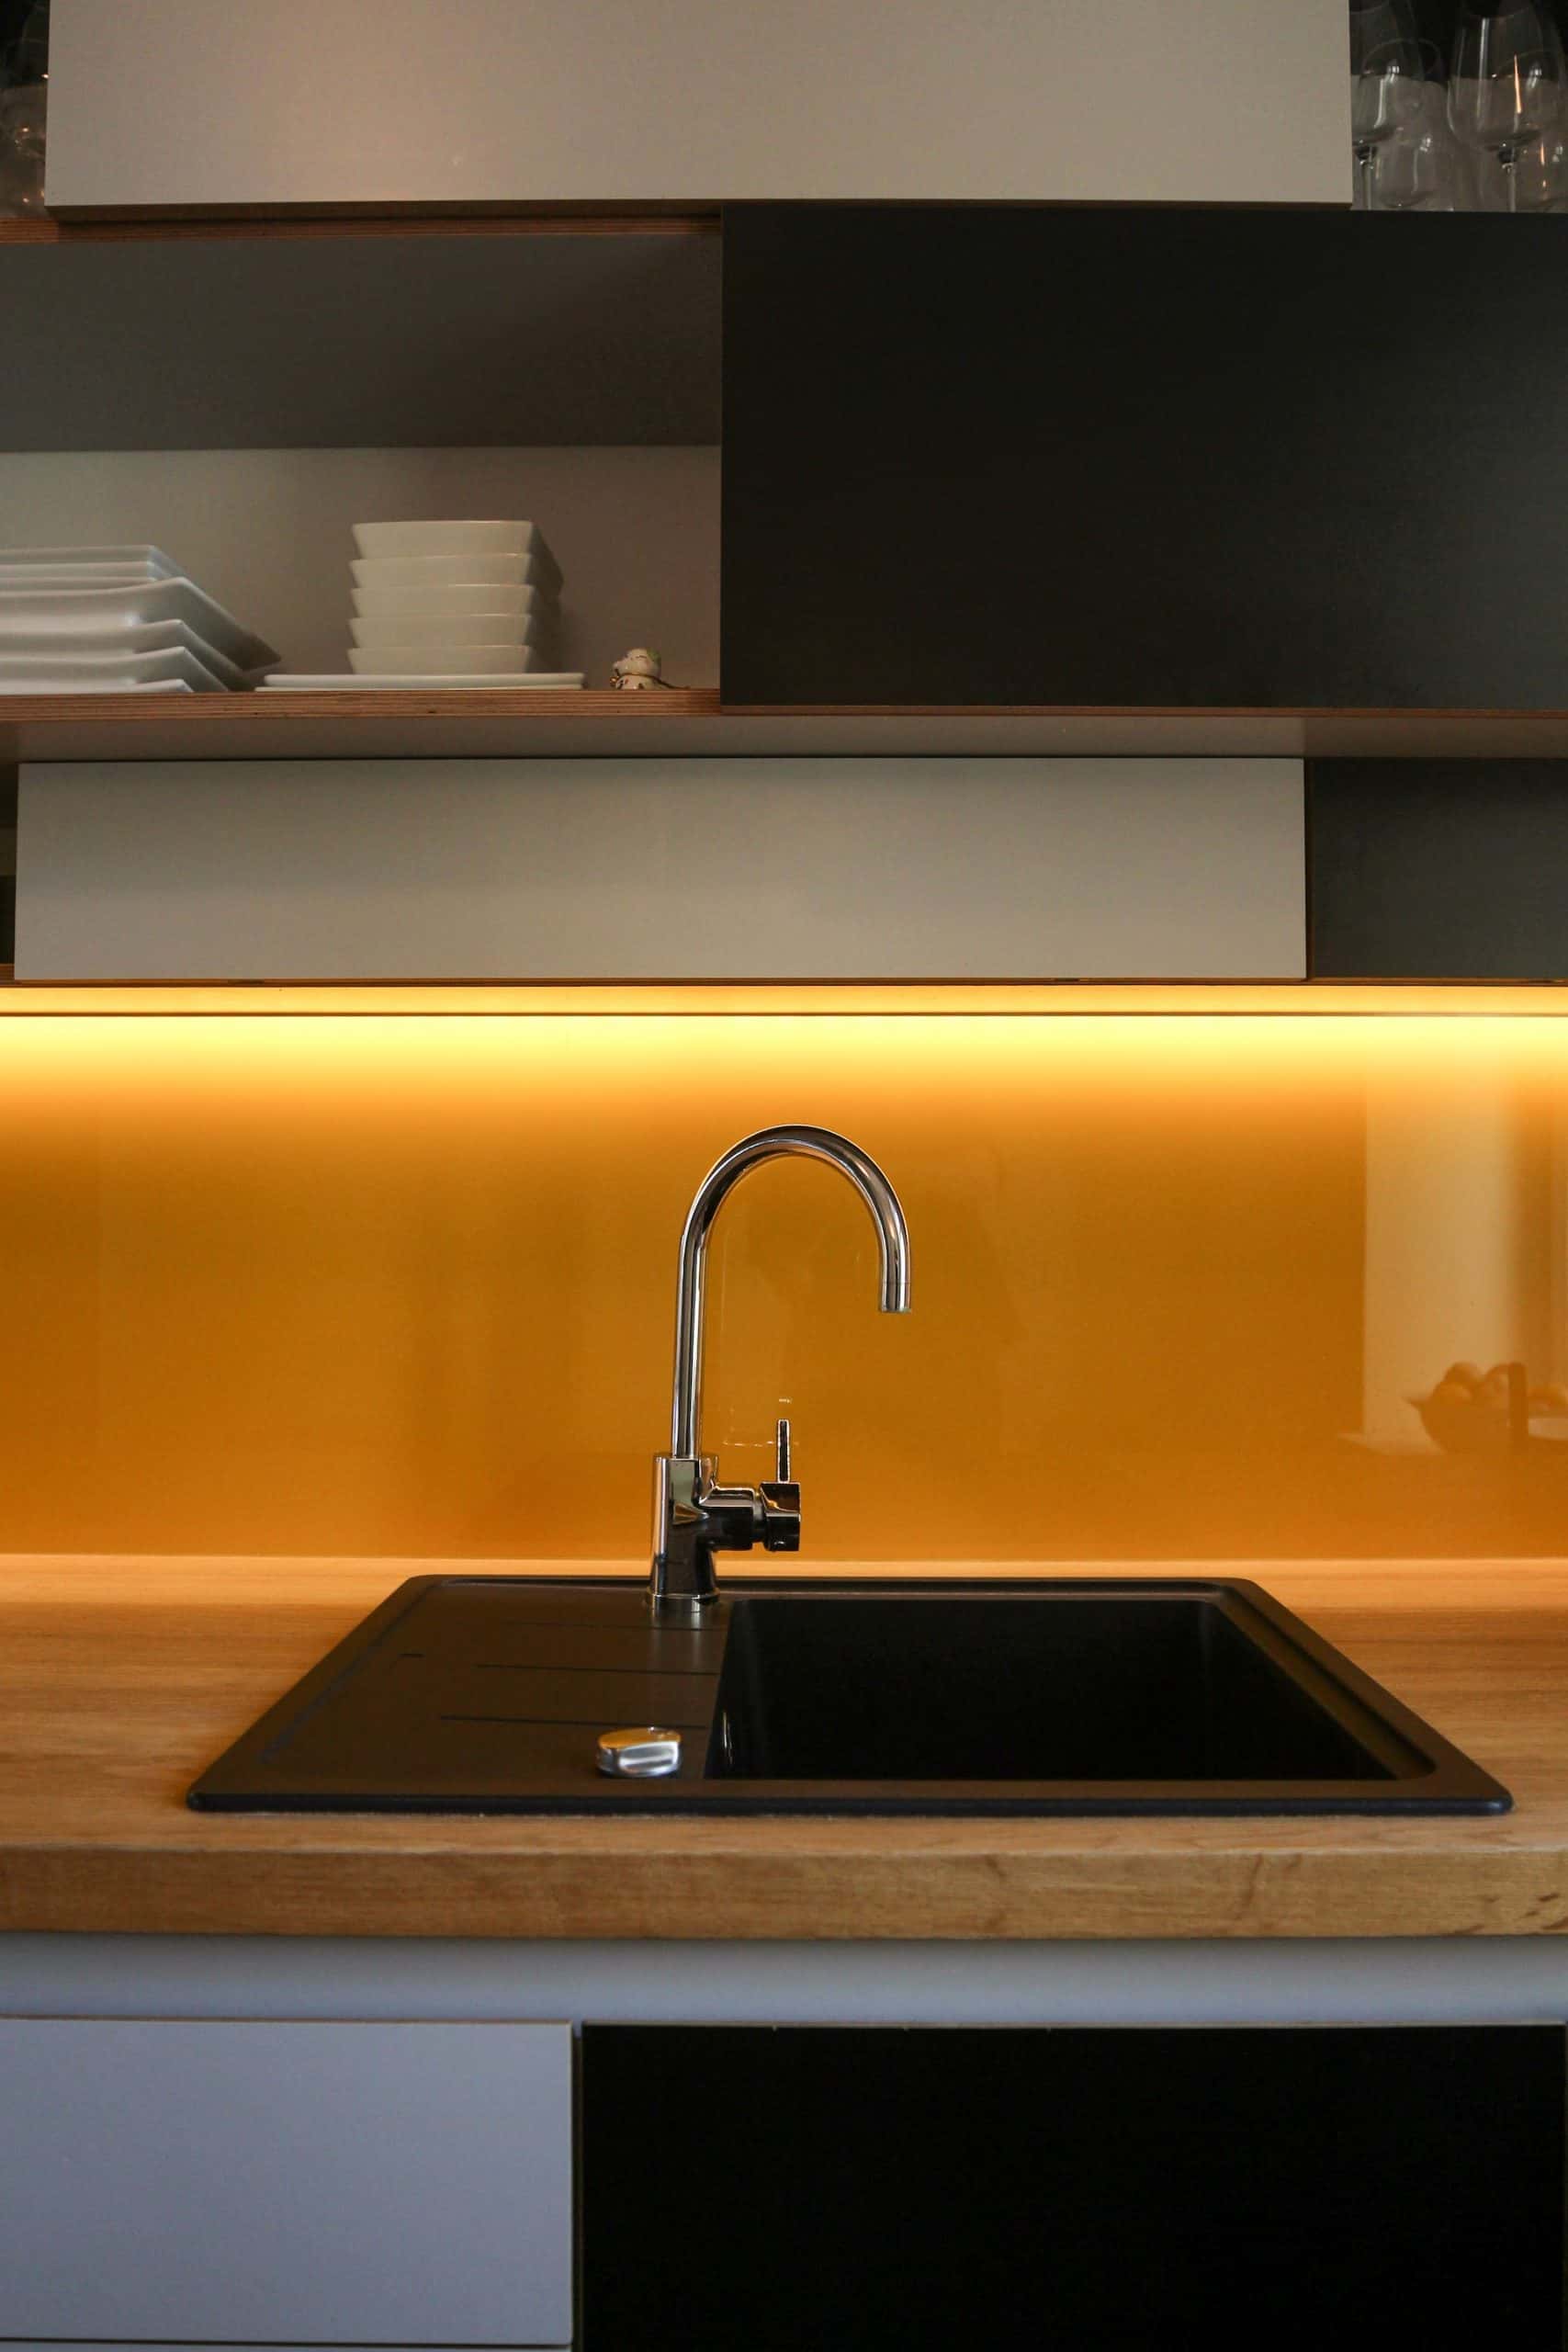 lit kitchen sink design